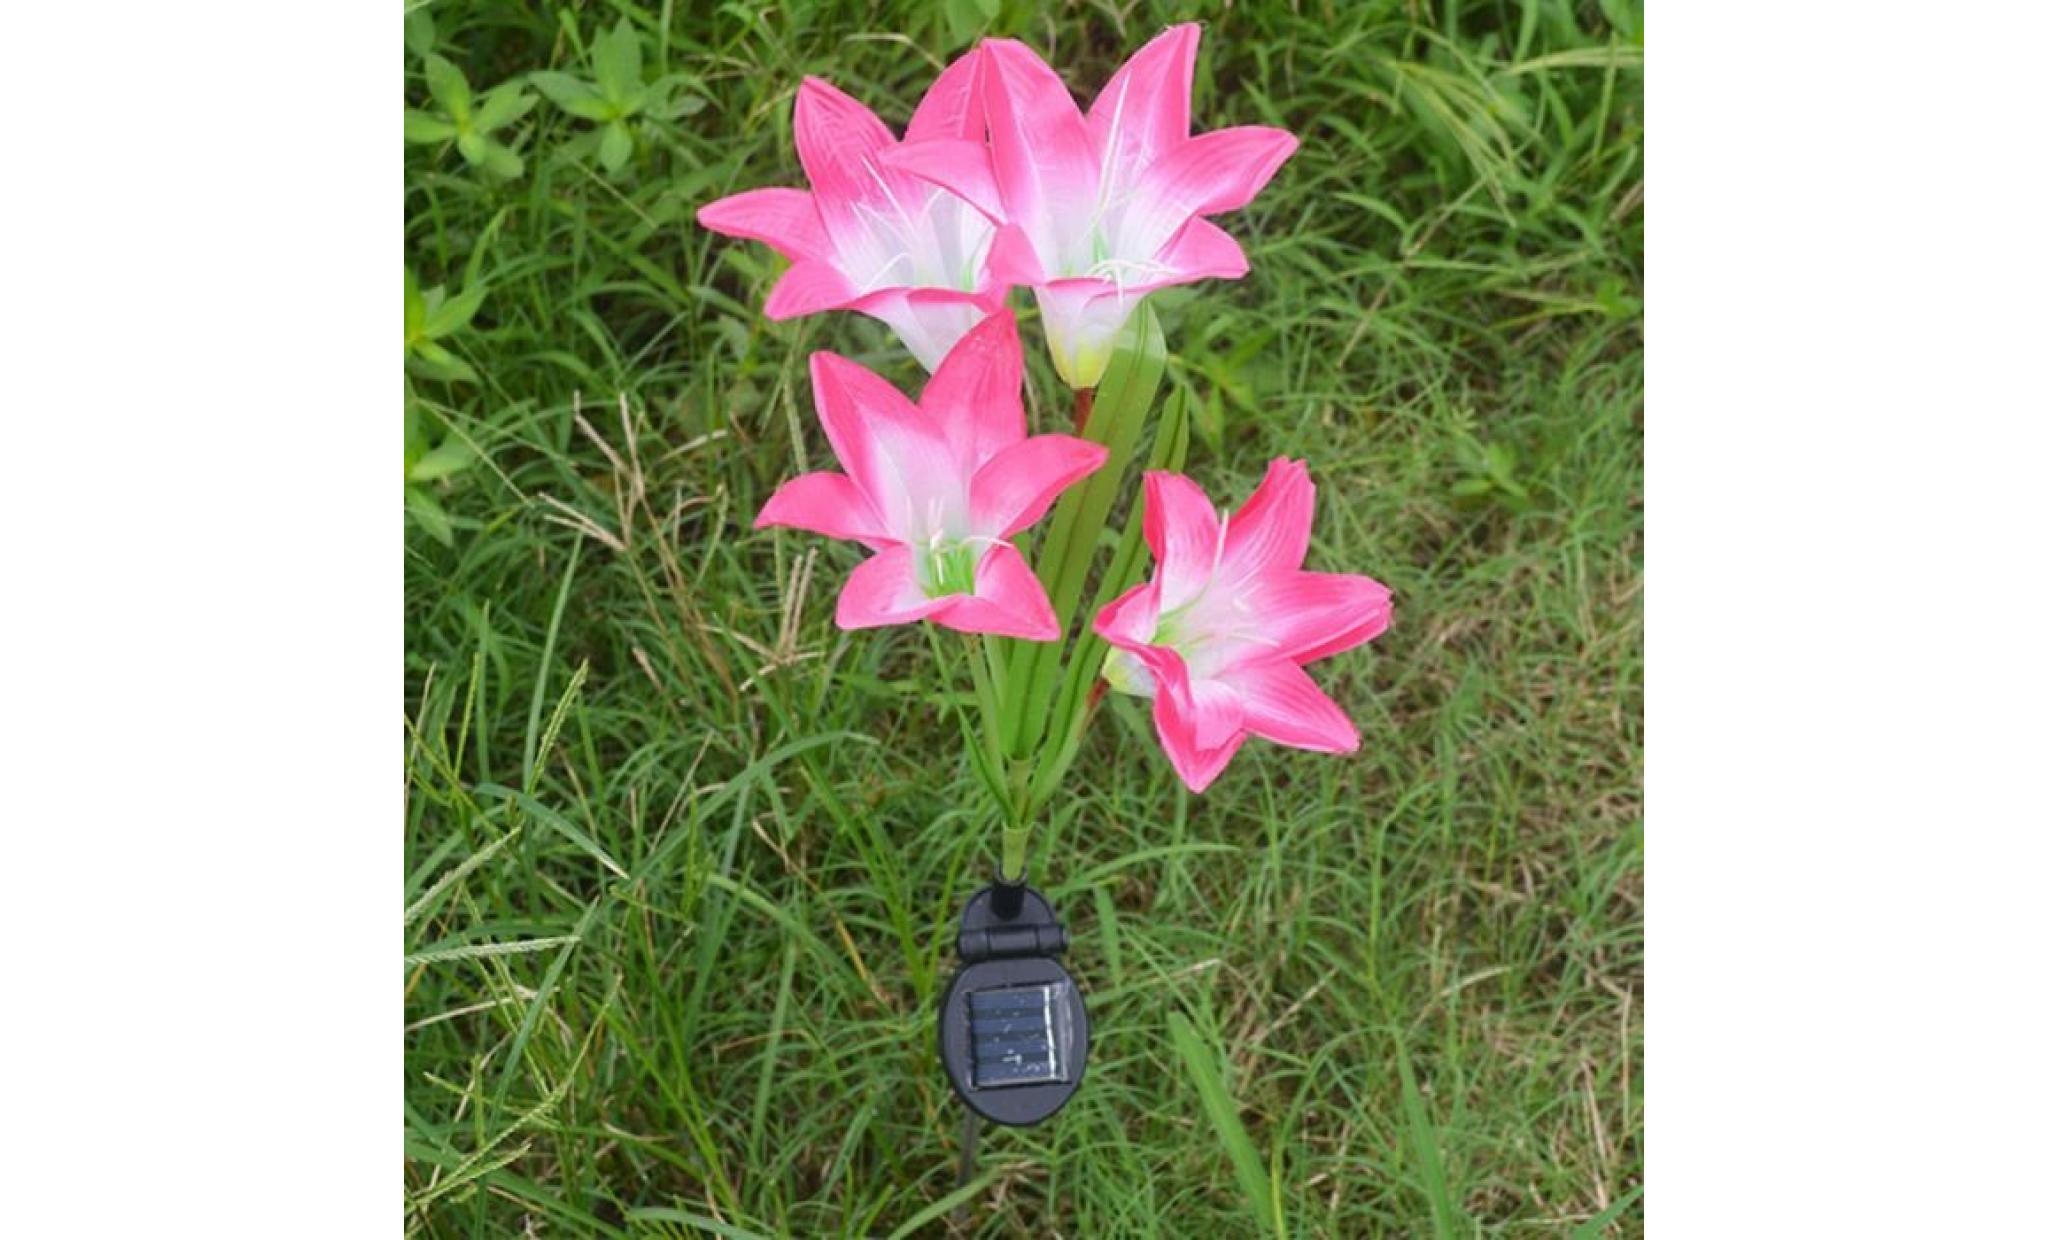 2 pièces lily flower garden powered solaire stake lumières fleurs artificielles led li641@ pas cher